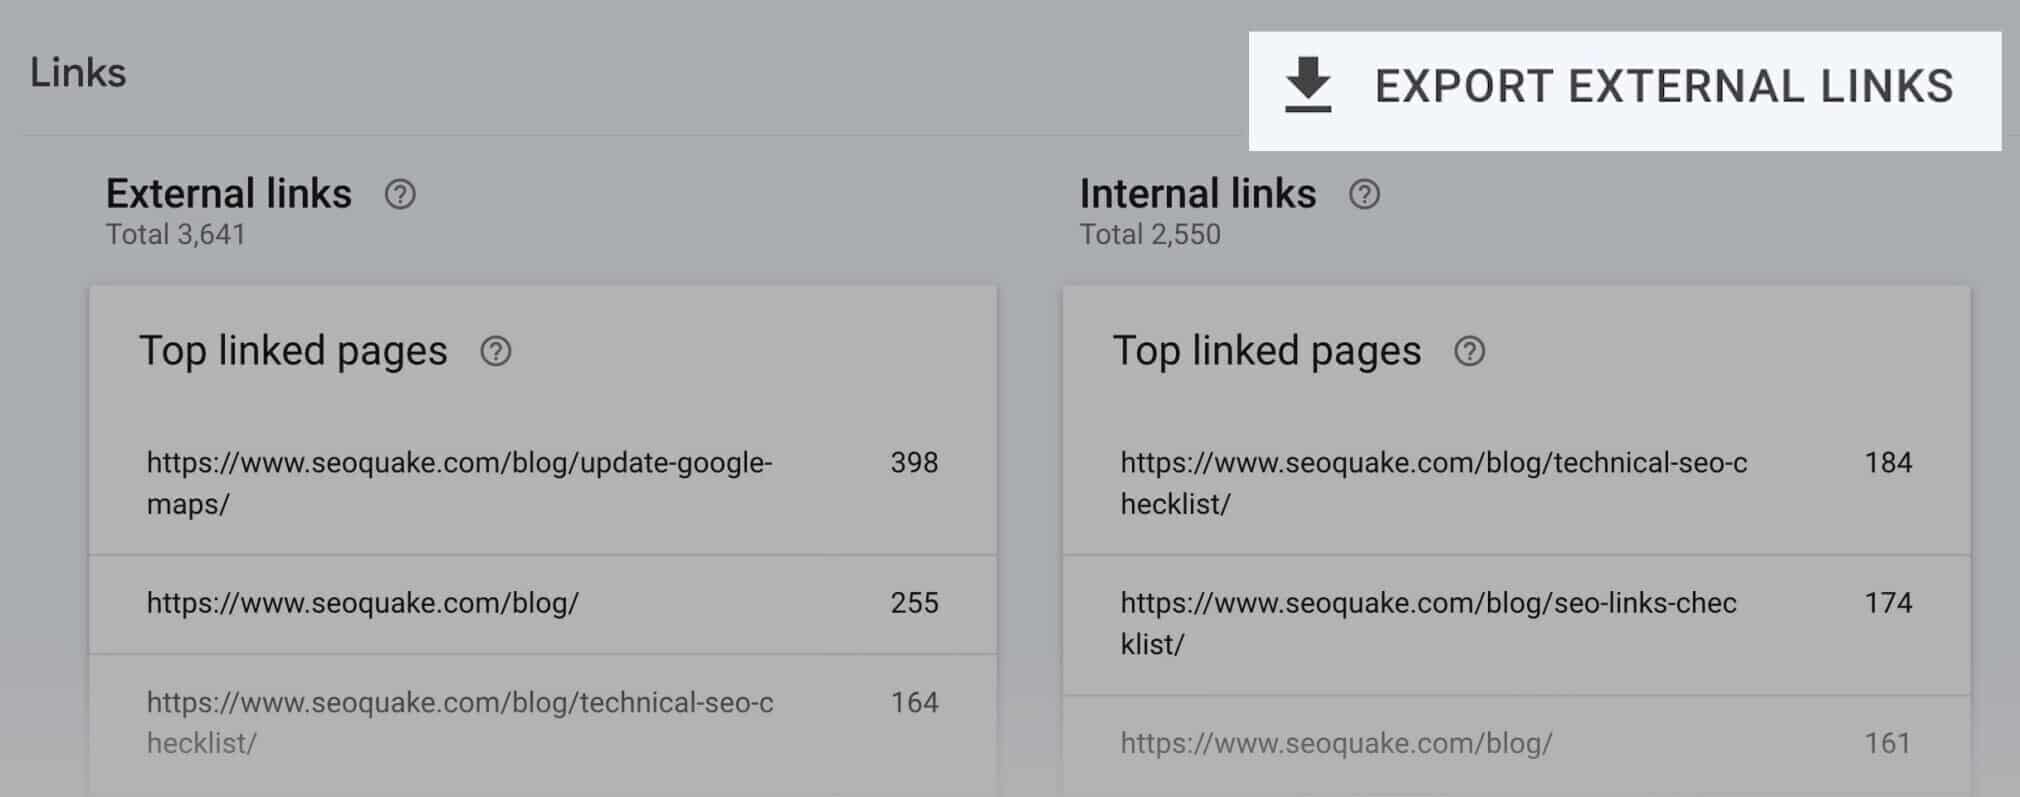 consola de búsqueda de google exportar enlaces externos